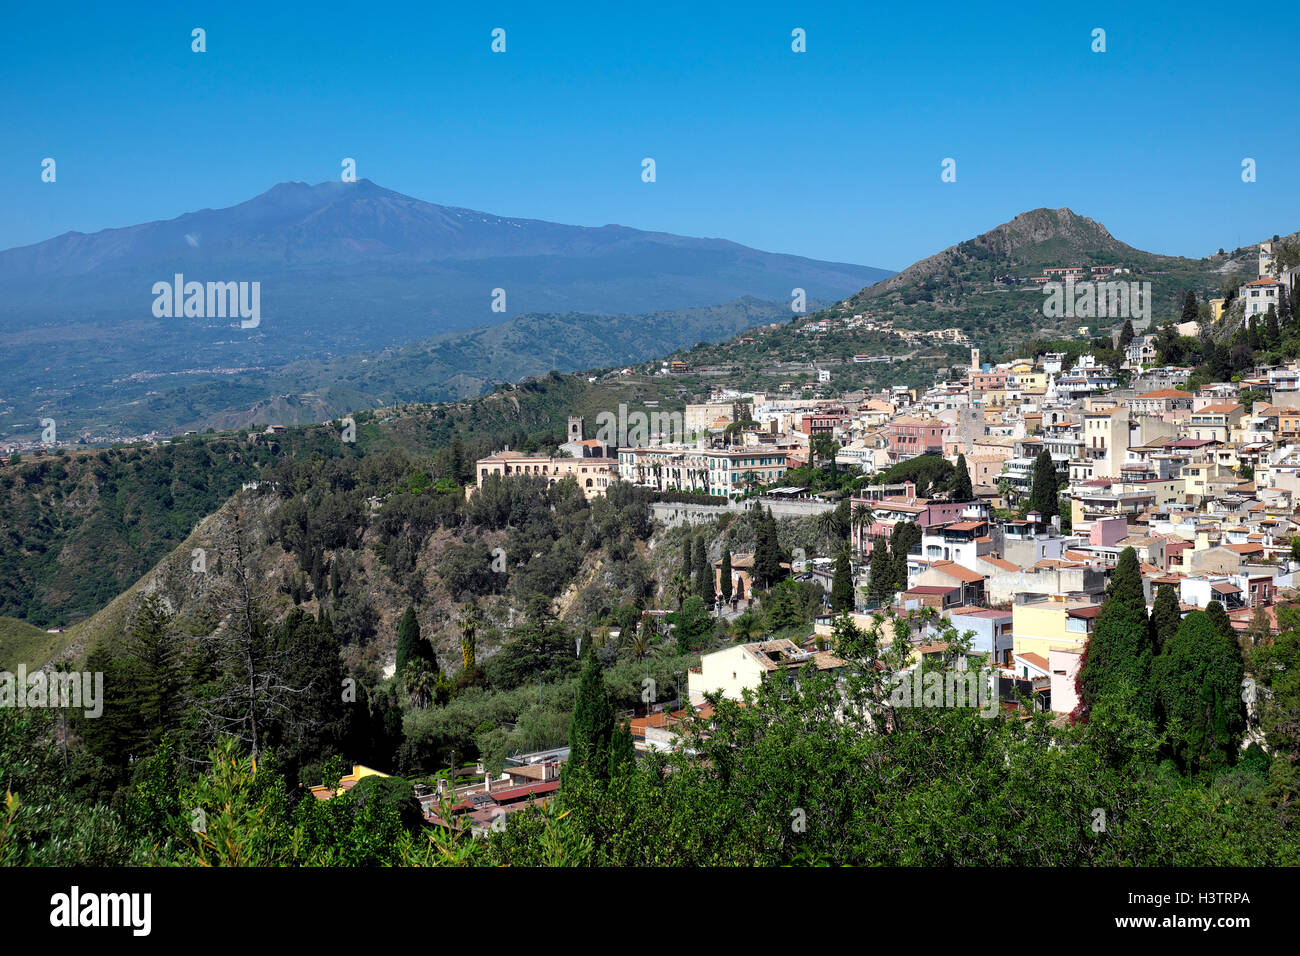 La colline, ville de Taormina, avec l'Etna, en Sicile, Italie Banque D'Images